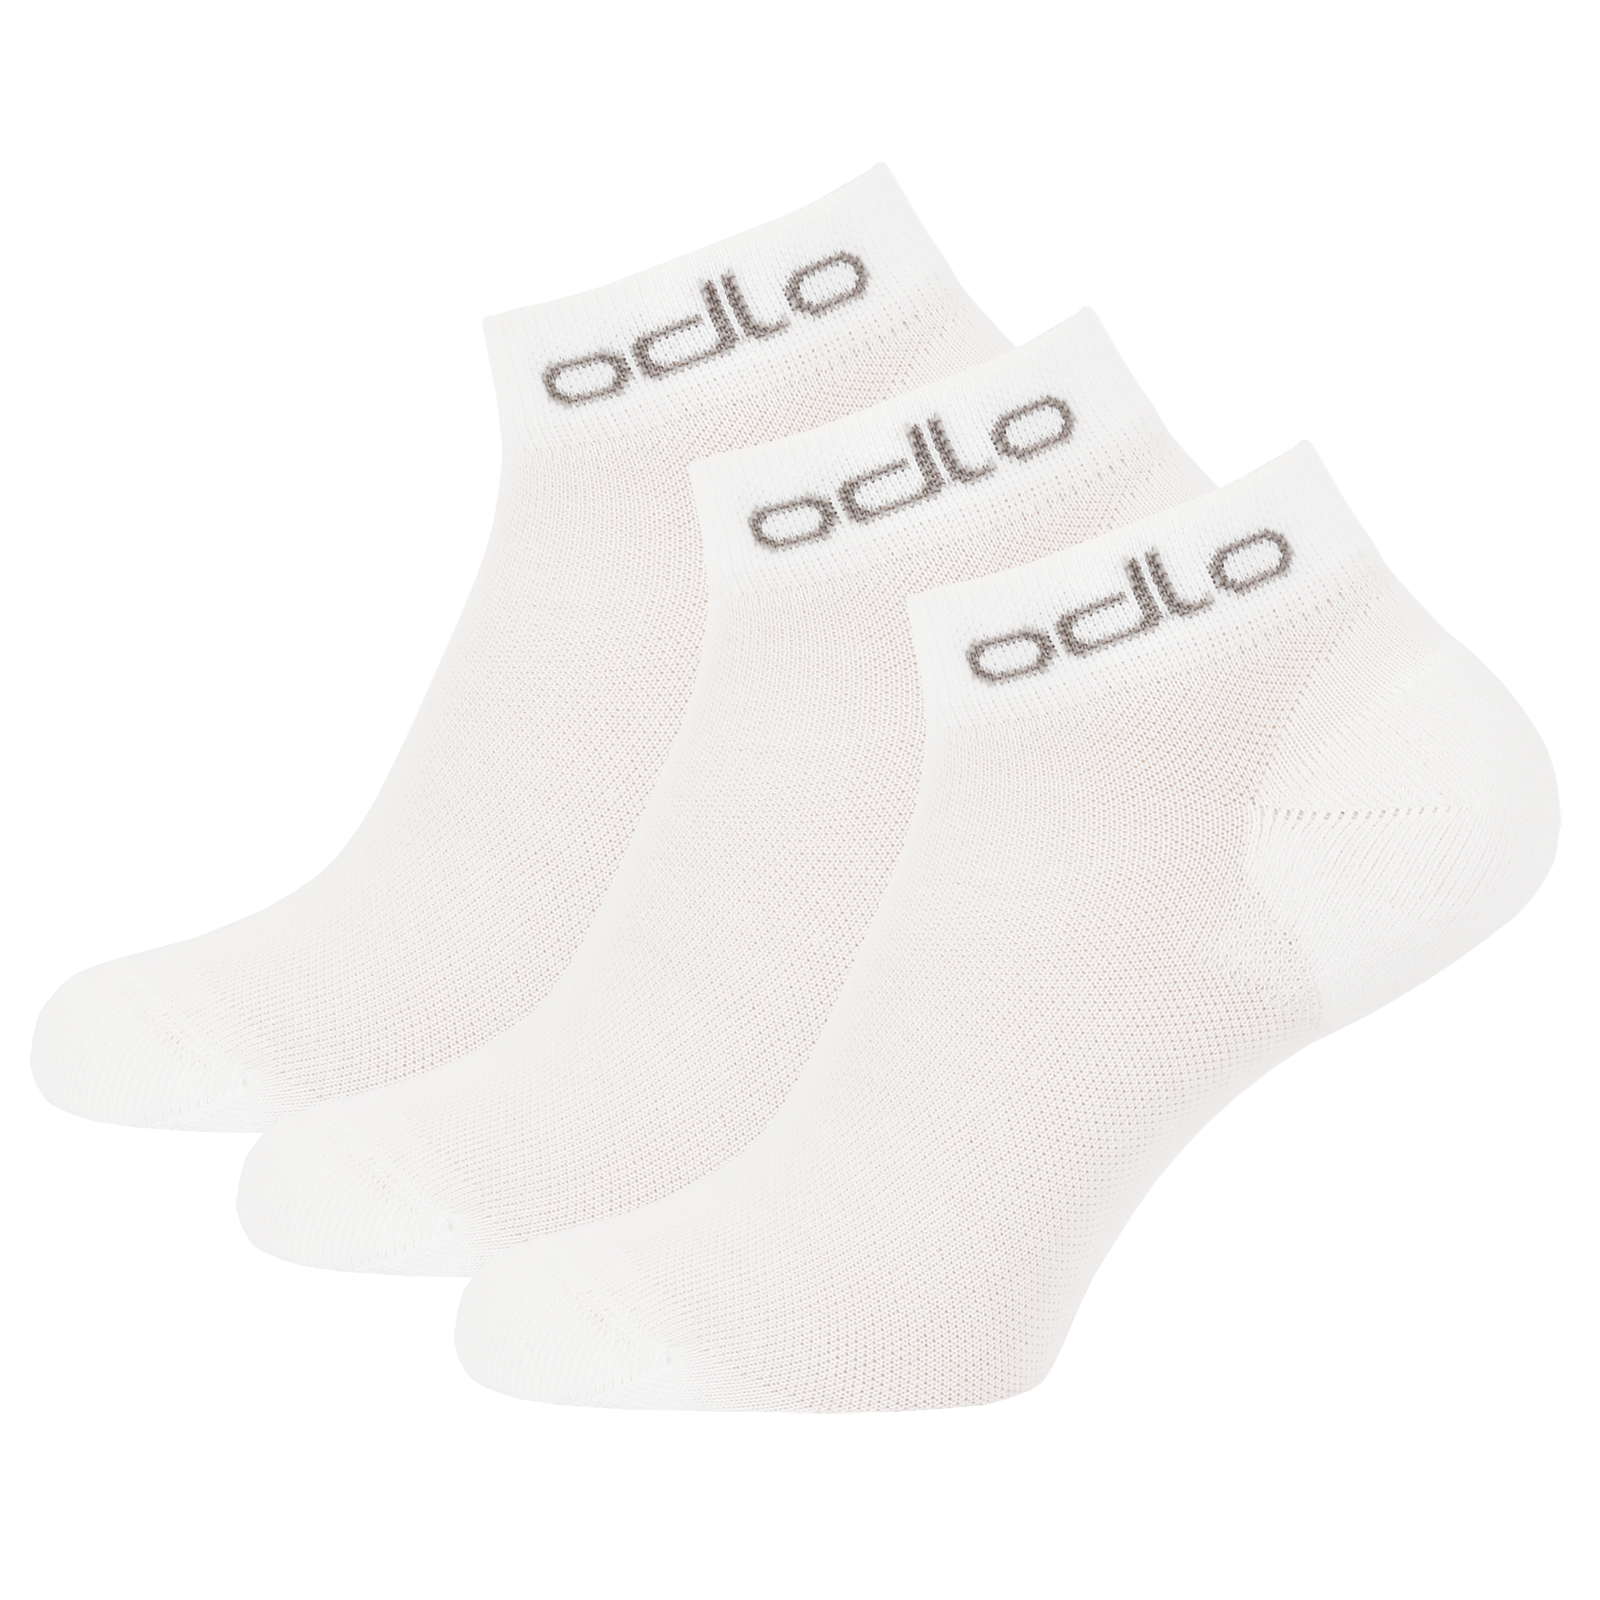 Produktbild von Odlo Active LOW Sneaker-Socken - Dreierpack - weiß